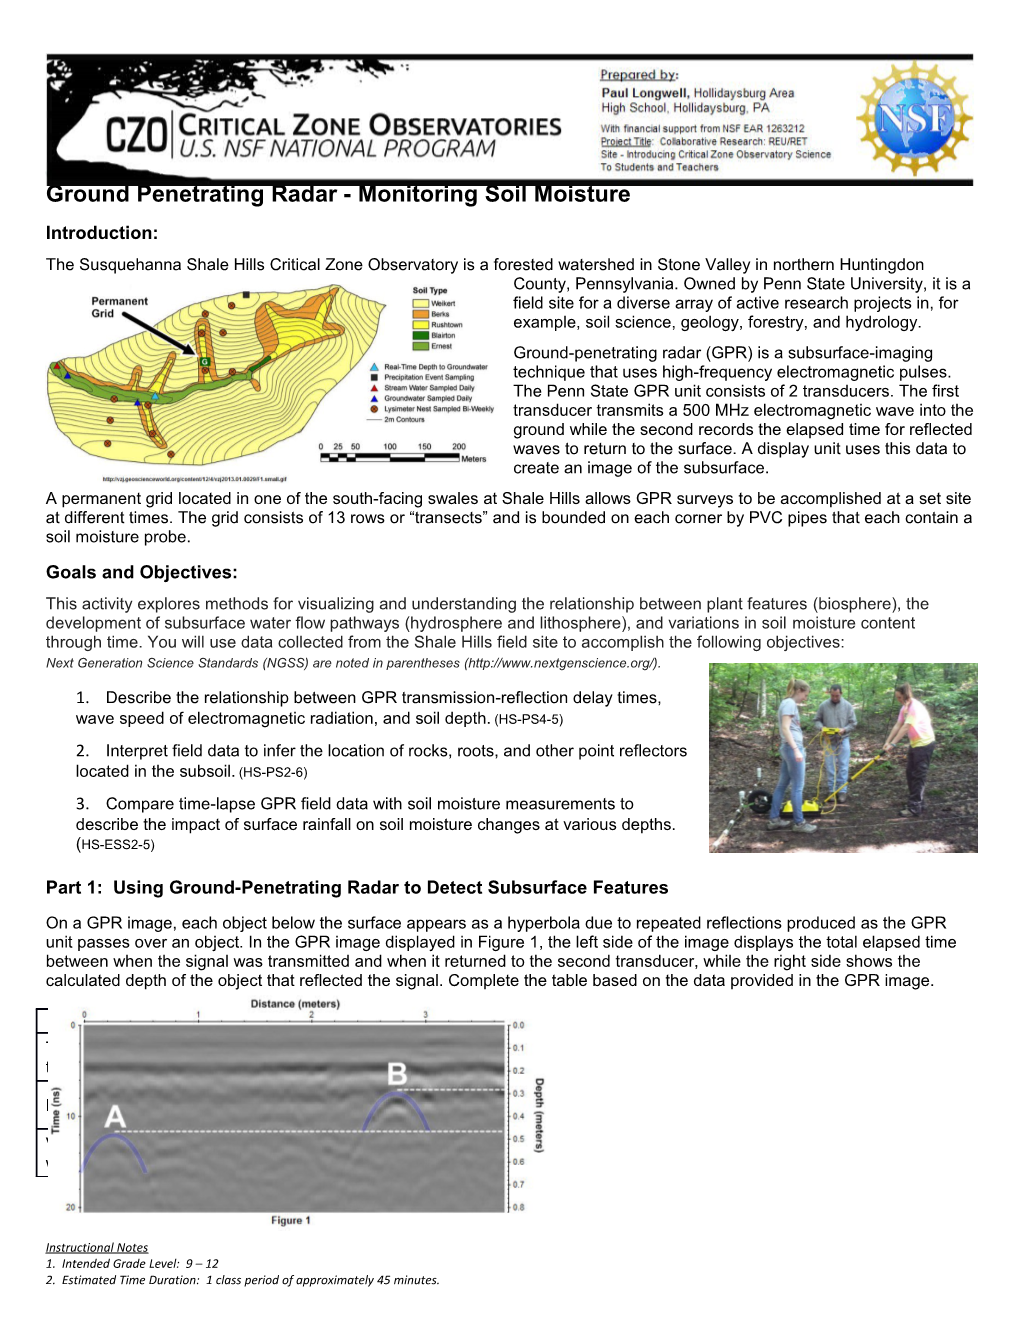 Ground Penetrating Radar - Monitoring Soil Moisture